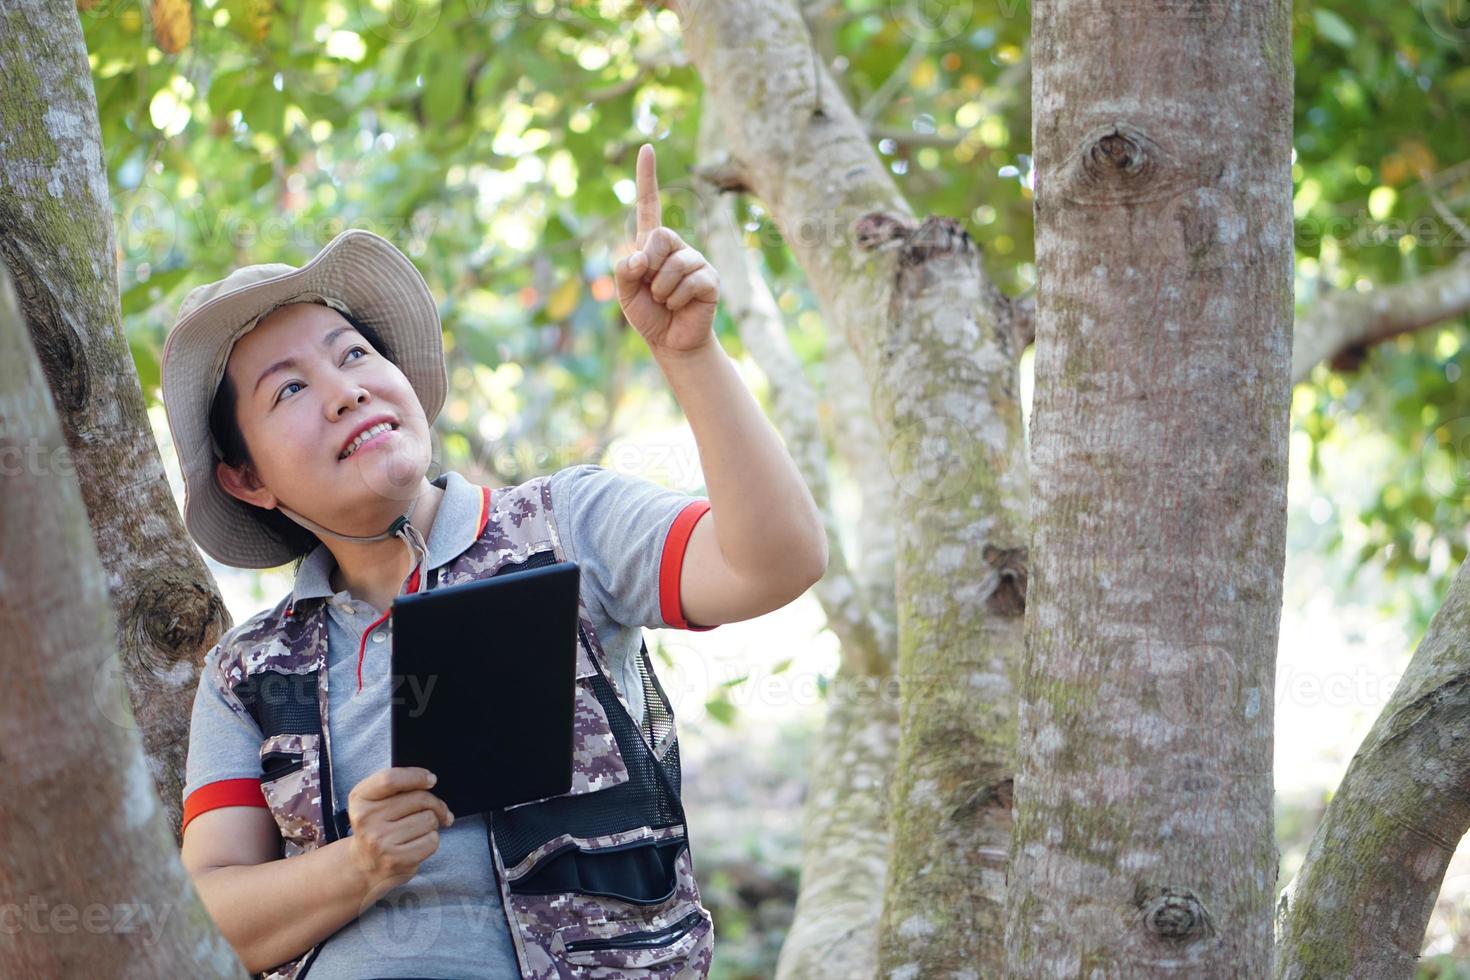 asiatische botanikerin ist im wald, hält smart tablet, um informationen über botanische pflanzen mit smart tablet zu erfassen und zu sammeln. konzept, abenteuer, feldforschung über umwelt. foto